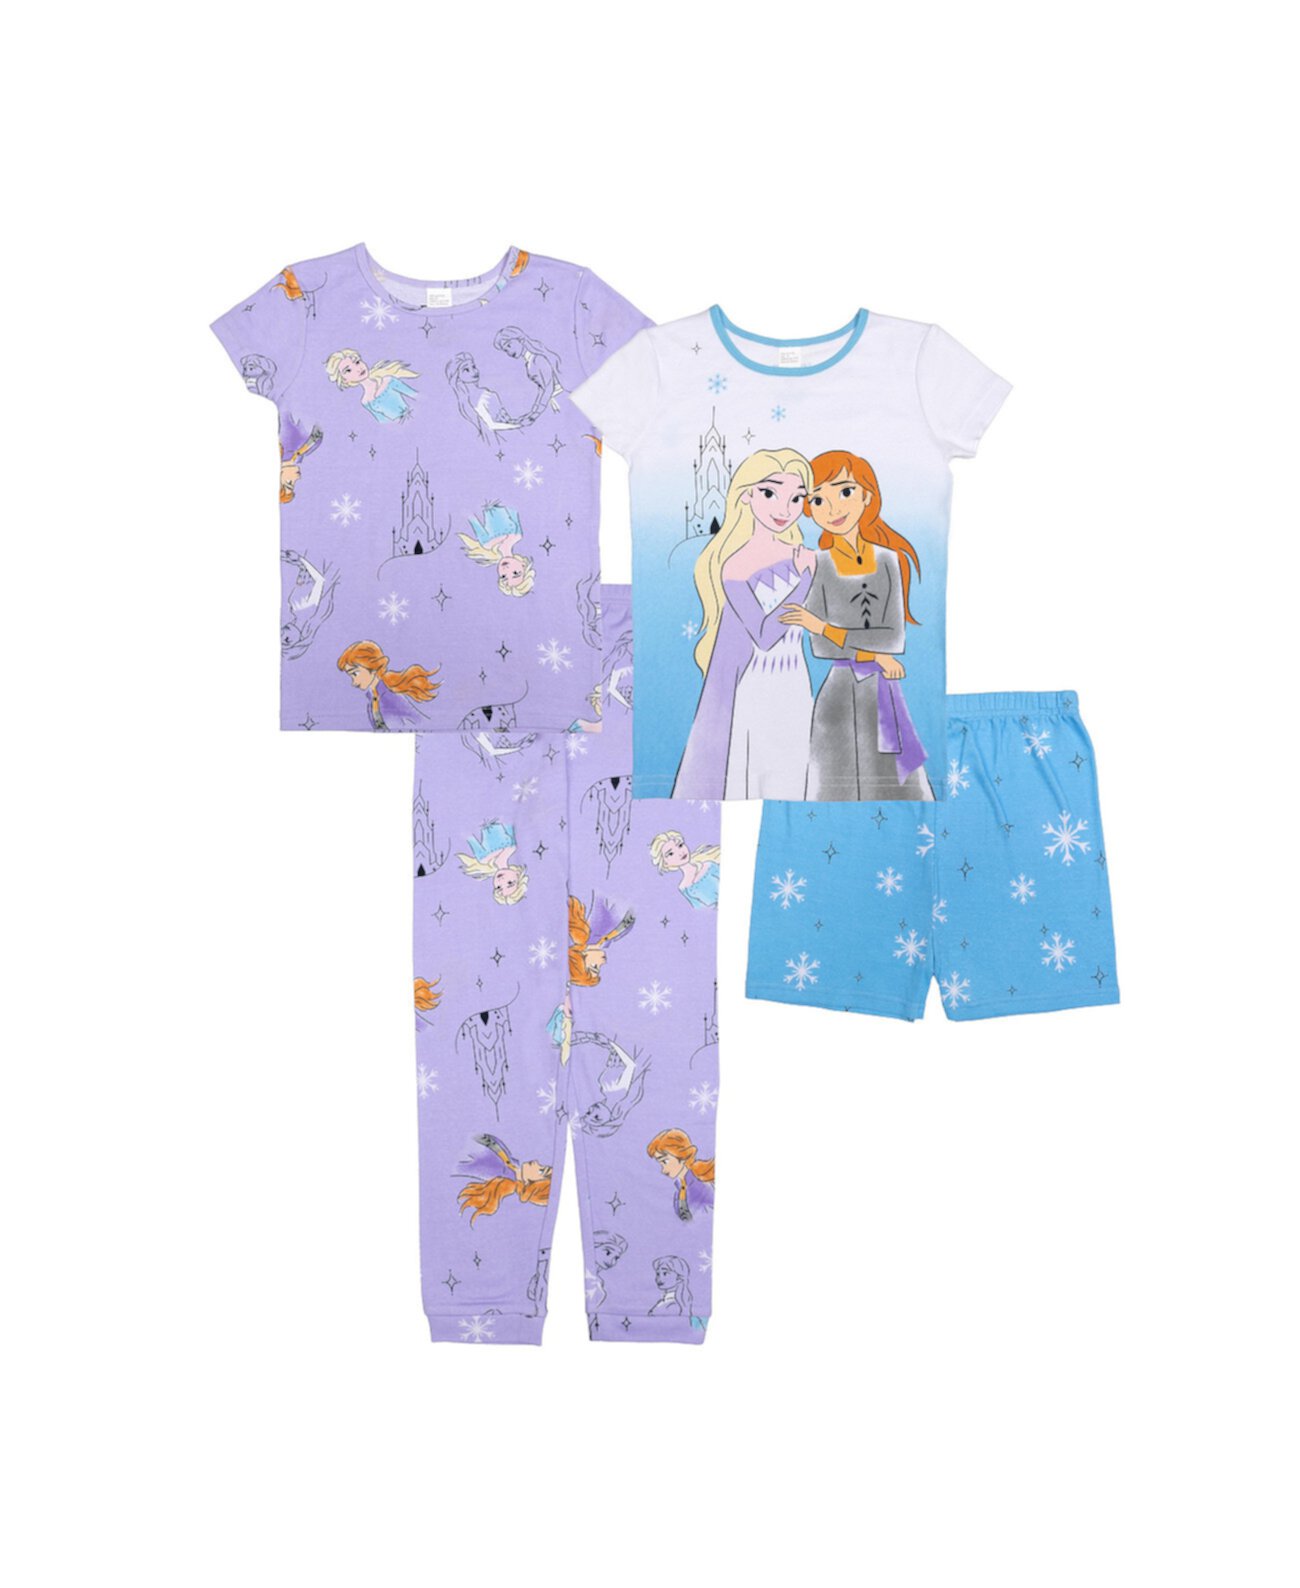 Хлопковый пижамный комплект для 2 маленьких девочек Frozen